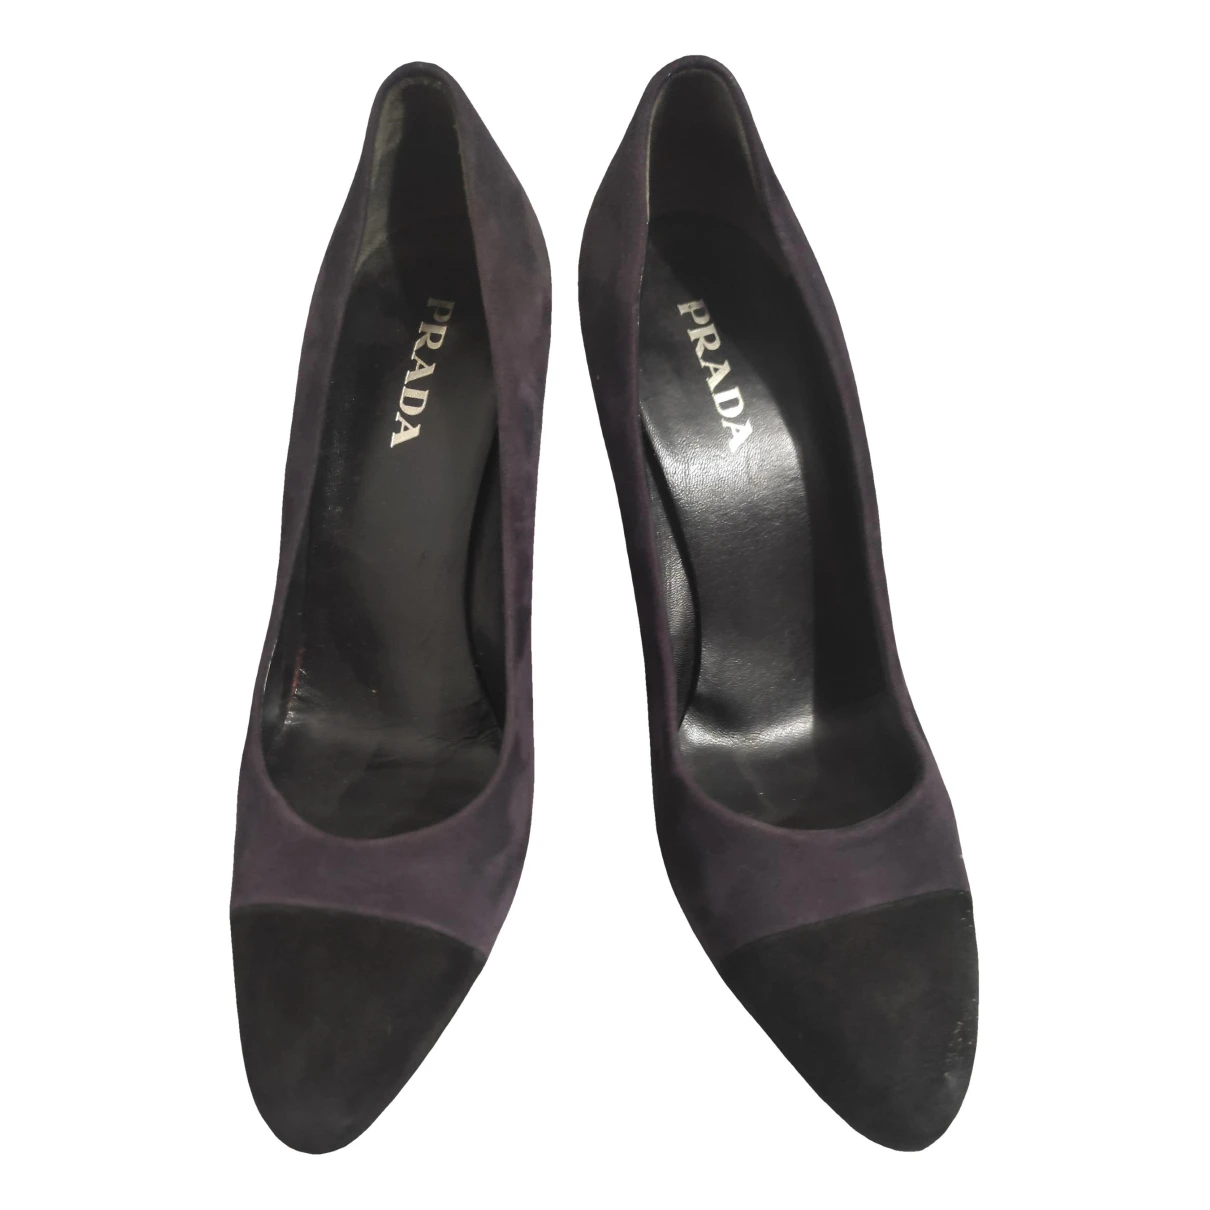 Pre-owned Prada Heels In Purple